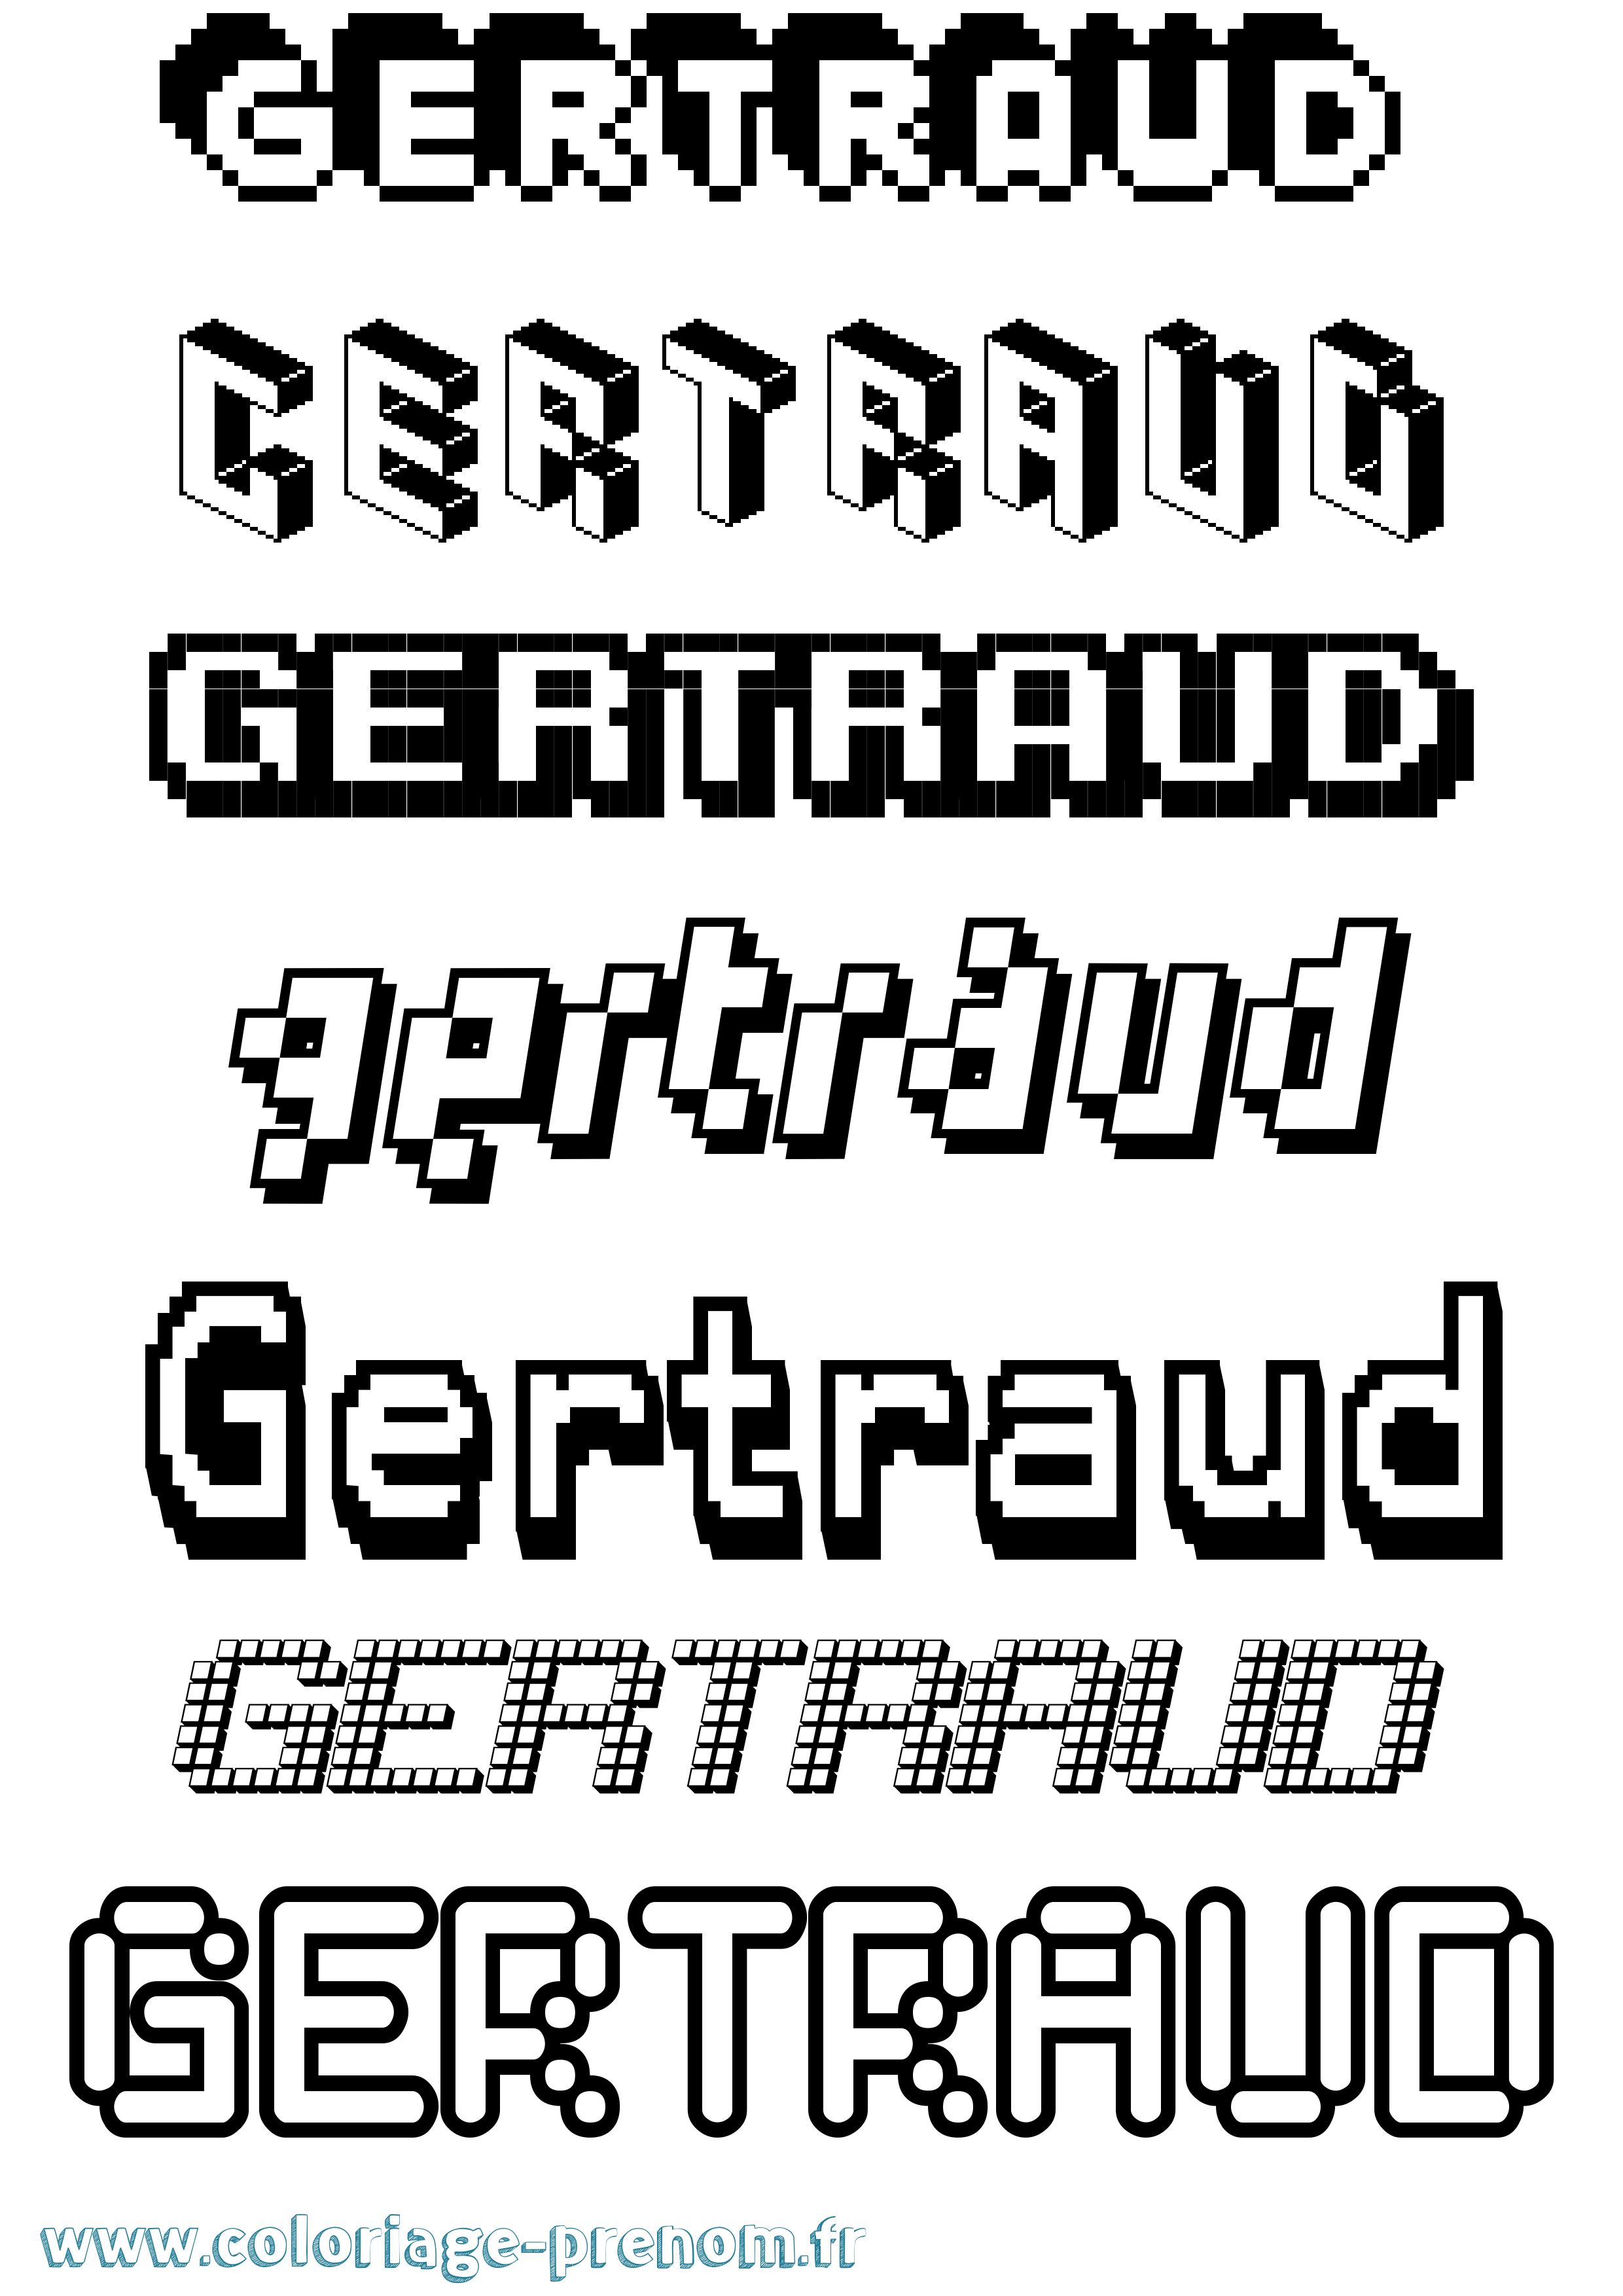 Coloriage prénom Gertraud Pixel